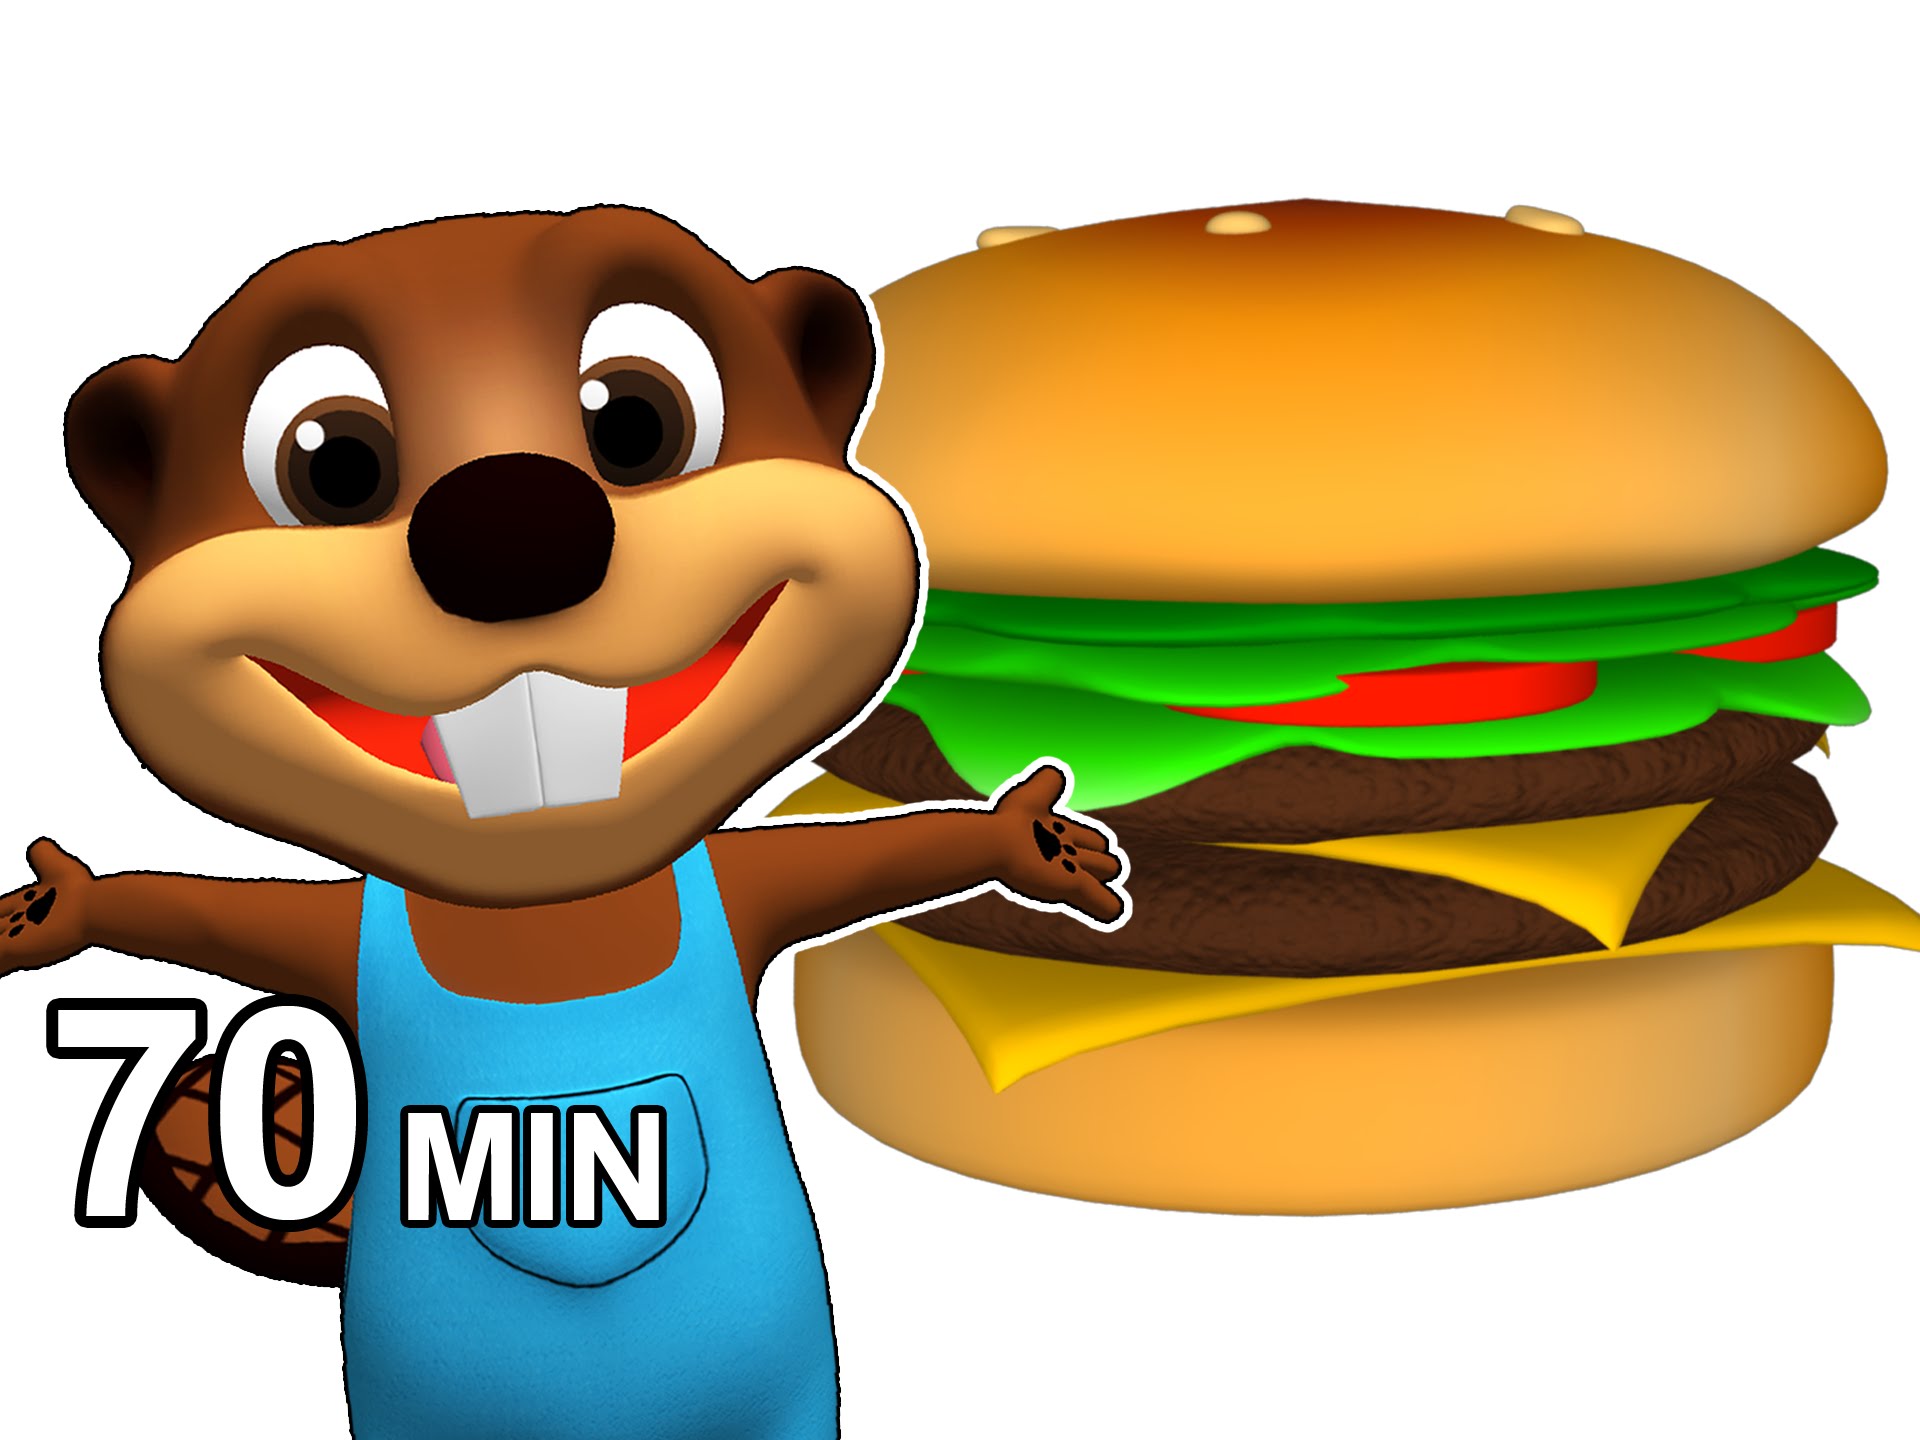 Billy Burger" Fun Food Songs & More | Make Hamburgers & Hot Dogs ...